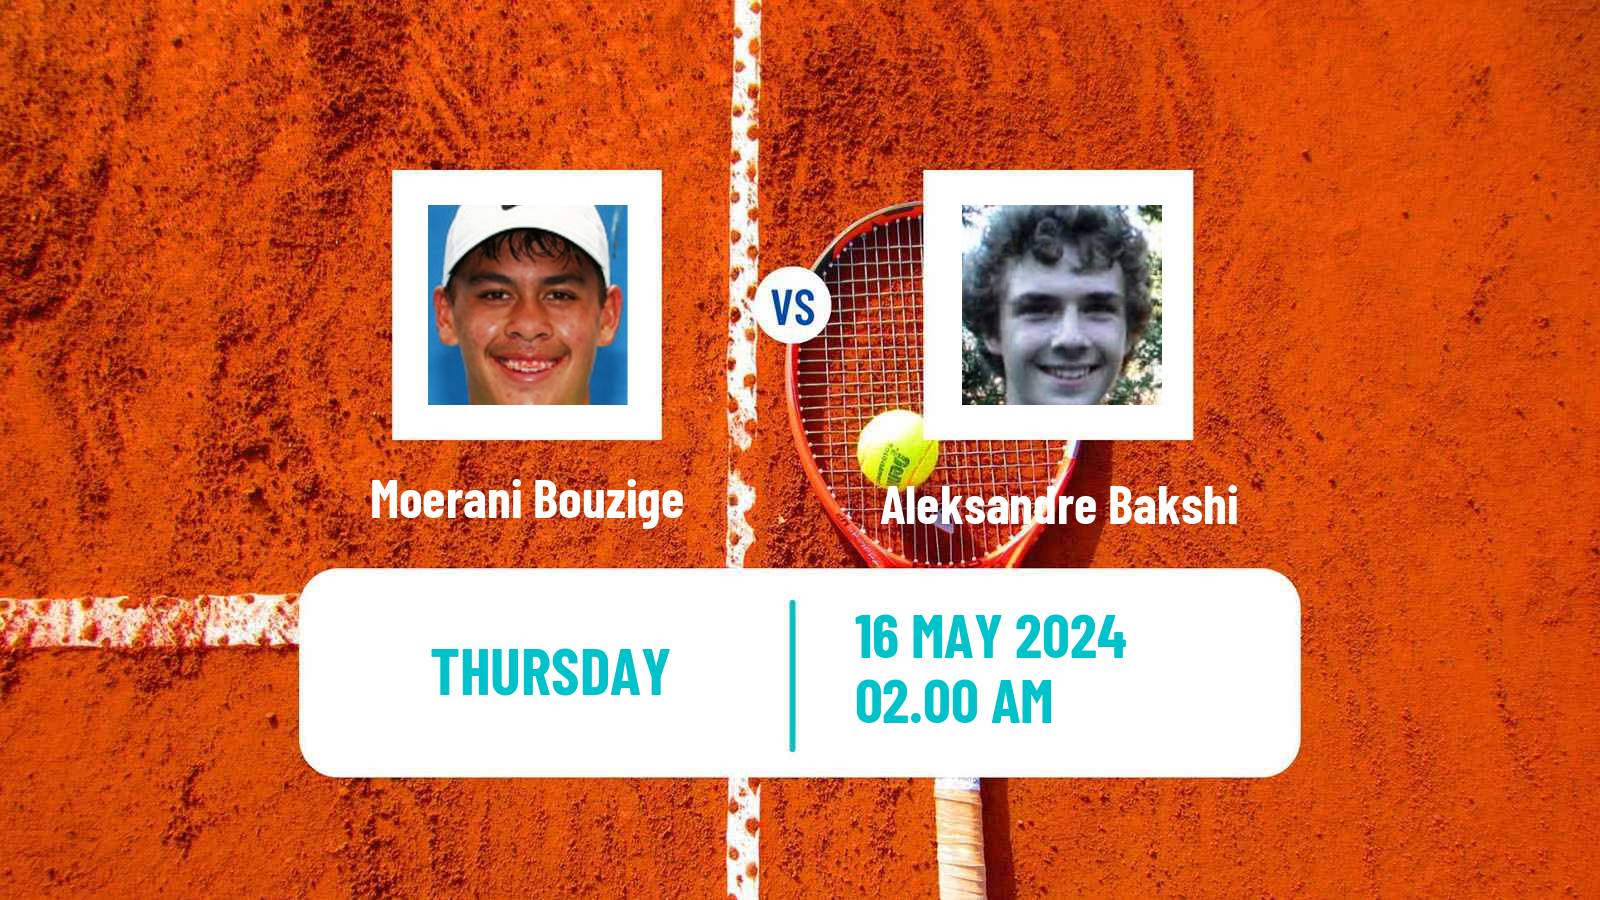 Tennis ITF M25 Kachreti Men Moerani Bouzige - Aleksandre Bakshi